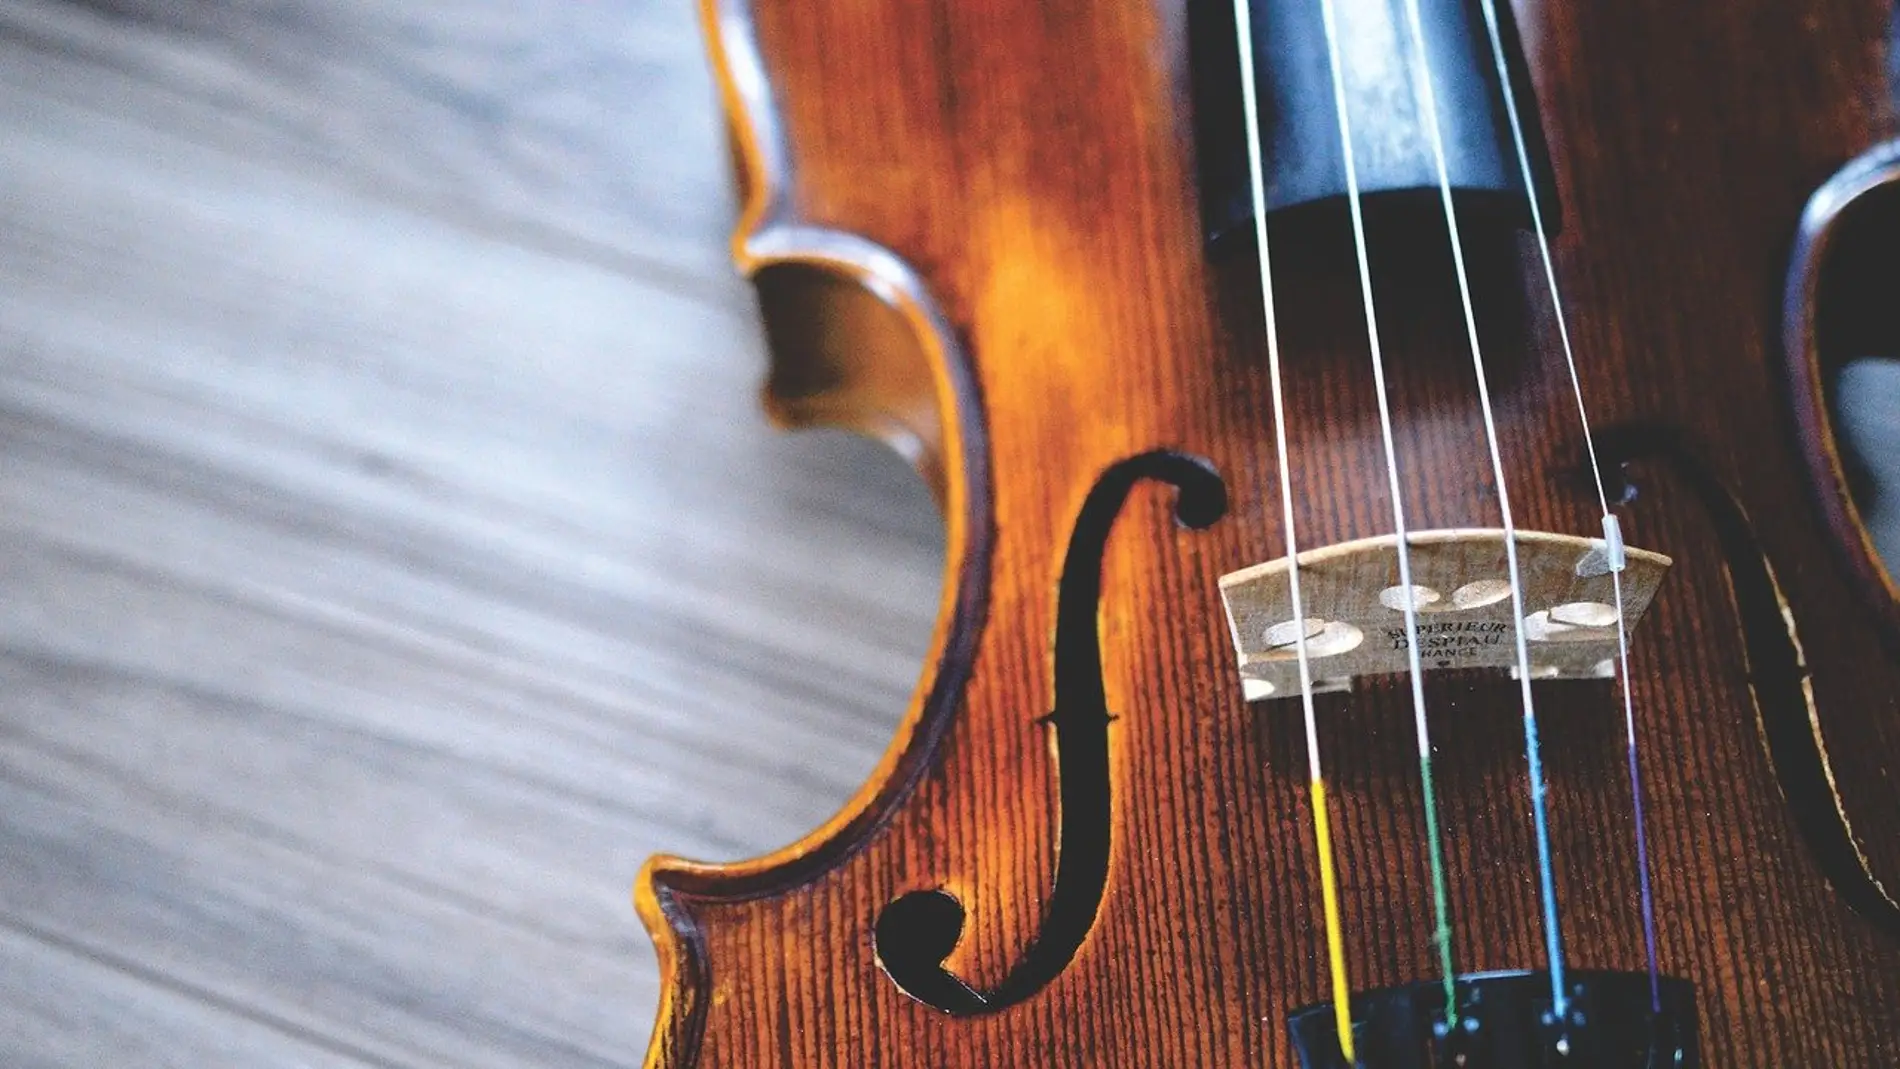 Imagen de archivo de violín